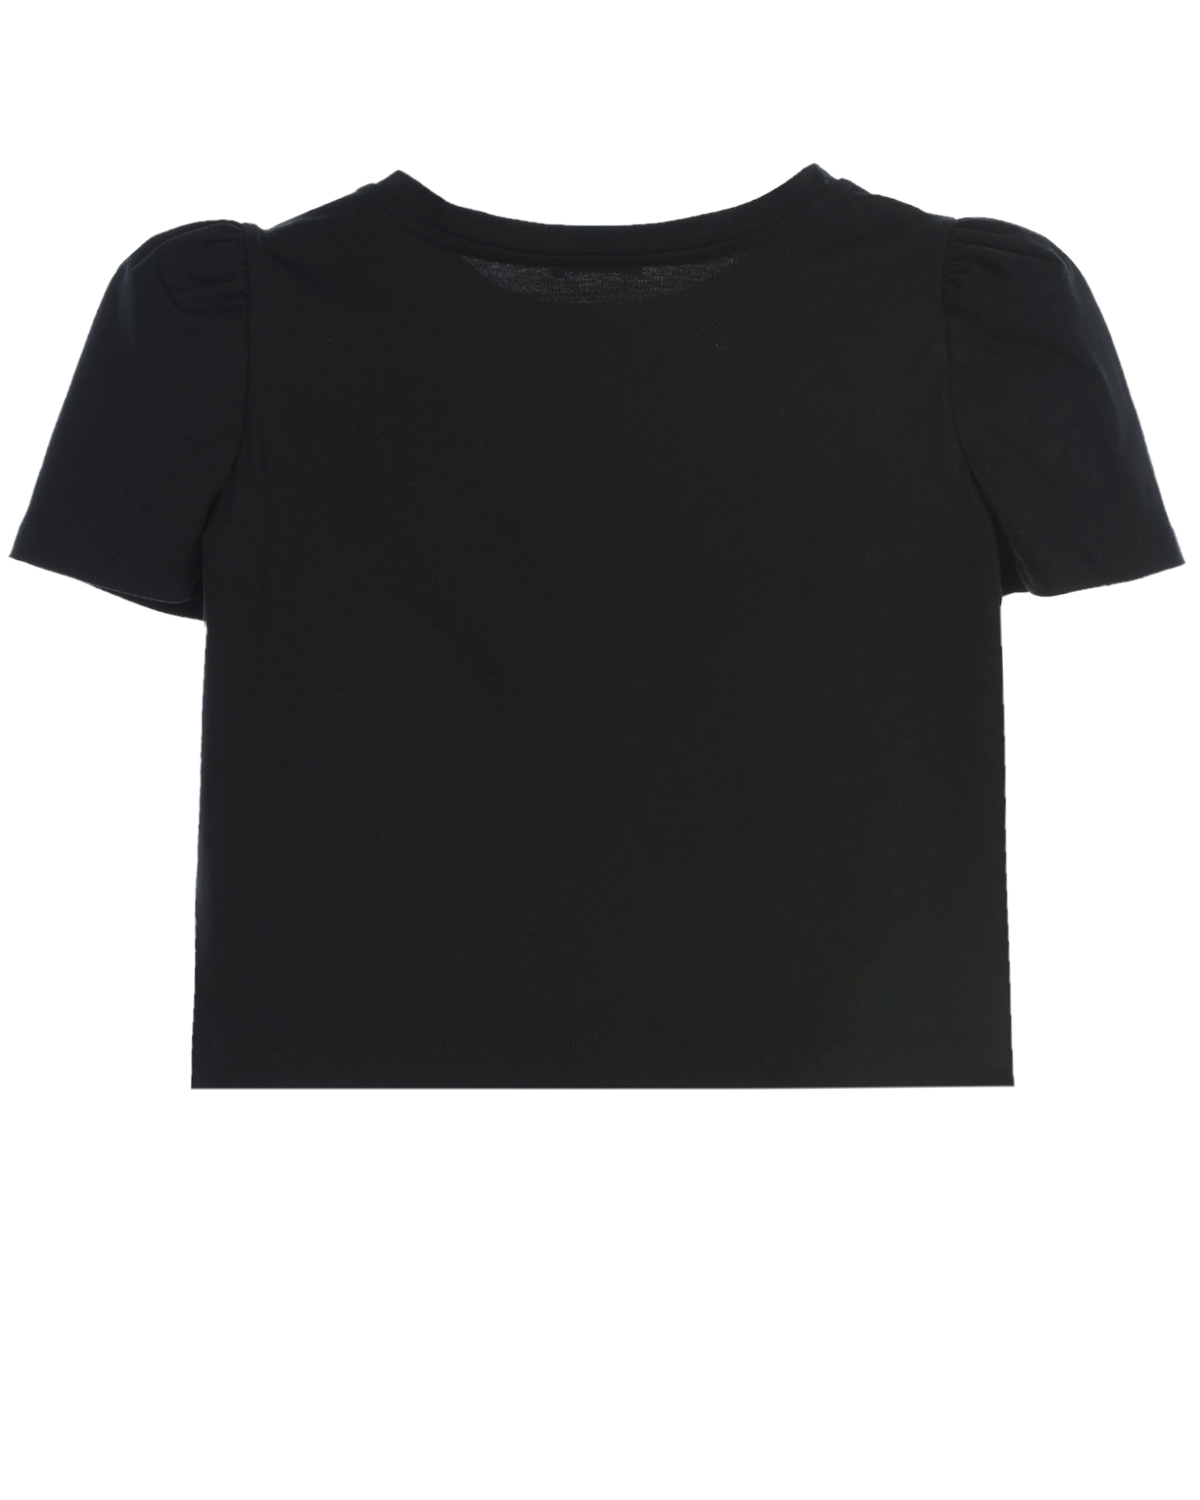 Черная футболка с принтом Monnalisa детская, размер 140, цвет черный - фото 2